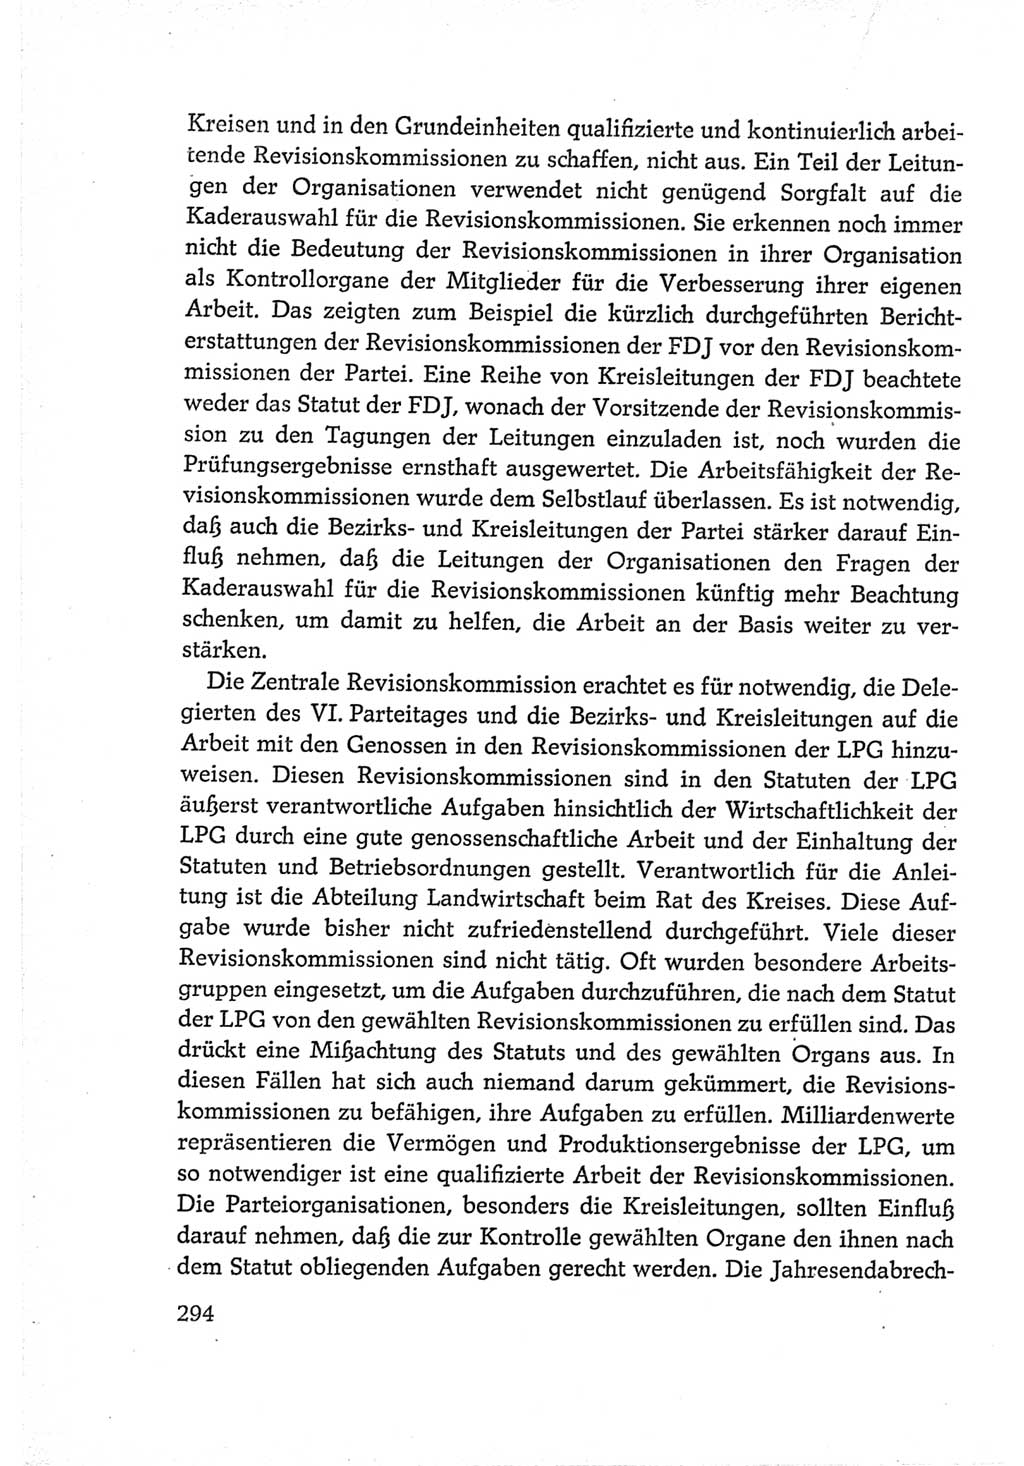 Protokoll der Verhandlungen des Ⅵ. Parteitages der Sozialistischen Einheitspartei Deutschlands (SED) [Deutsche Demokratische Republik (DDR)] 1963, Band Ⅳ, Seite 294 (Prot. Verh. Ⅵ. PT SED DDR 1963, Bd. Ⅳ, S. 294)